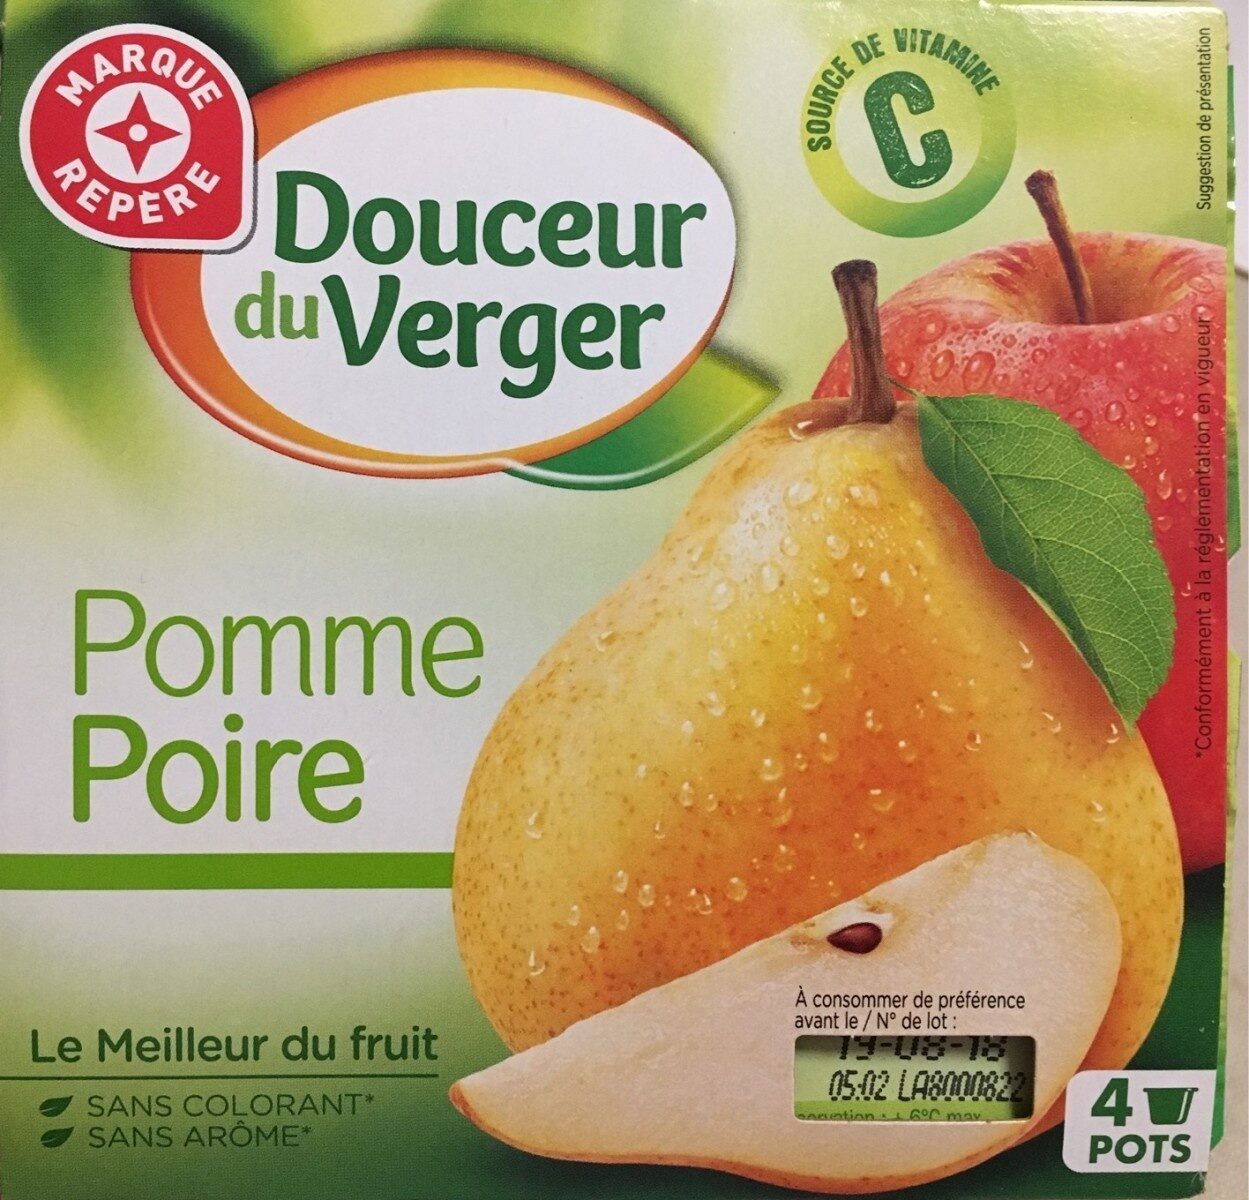 Douceurs du verger - Pomme  + Poire - Product - fr